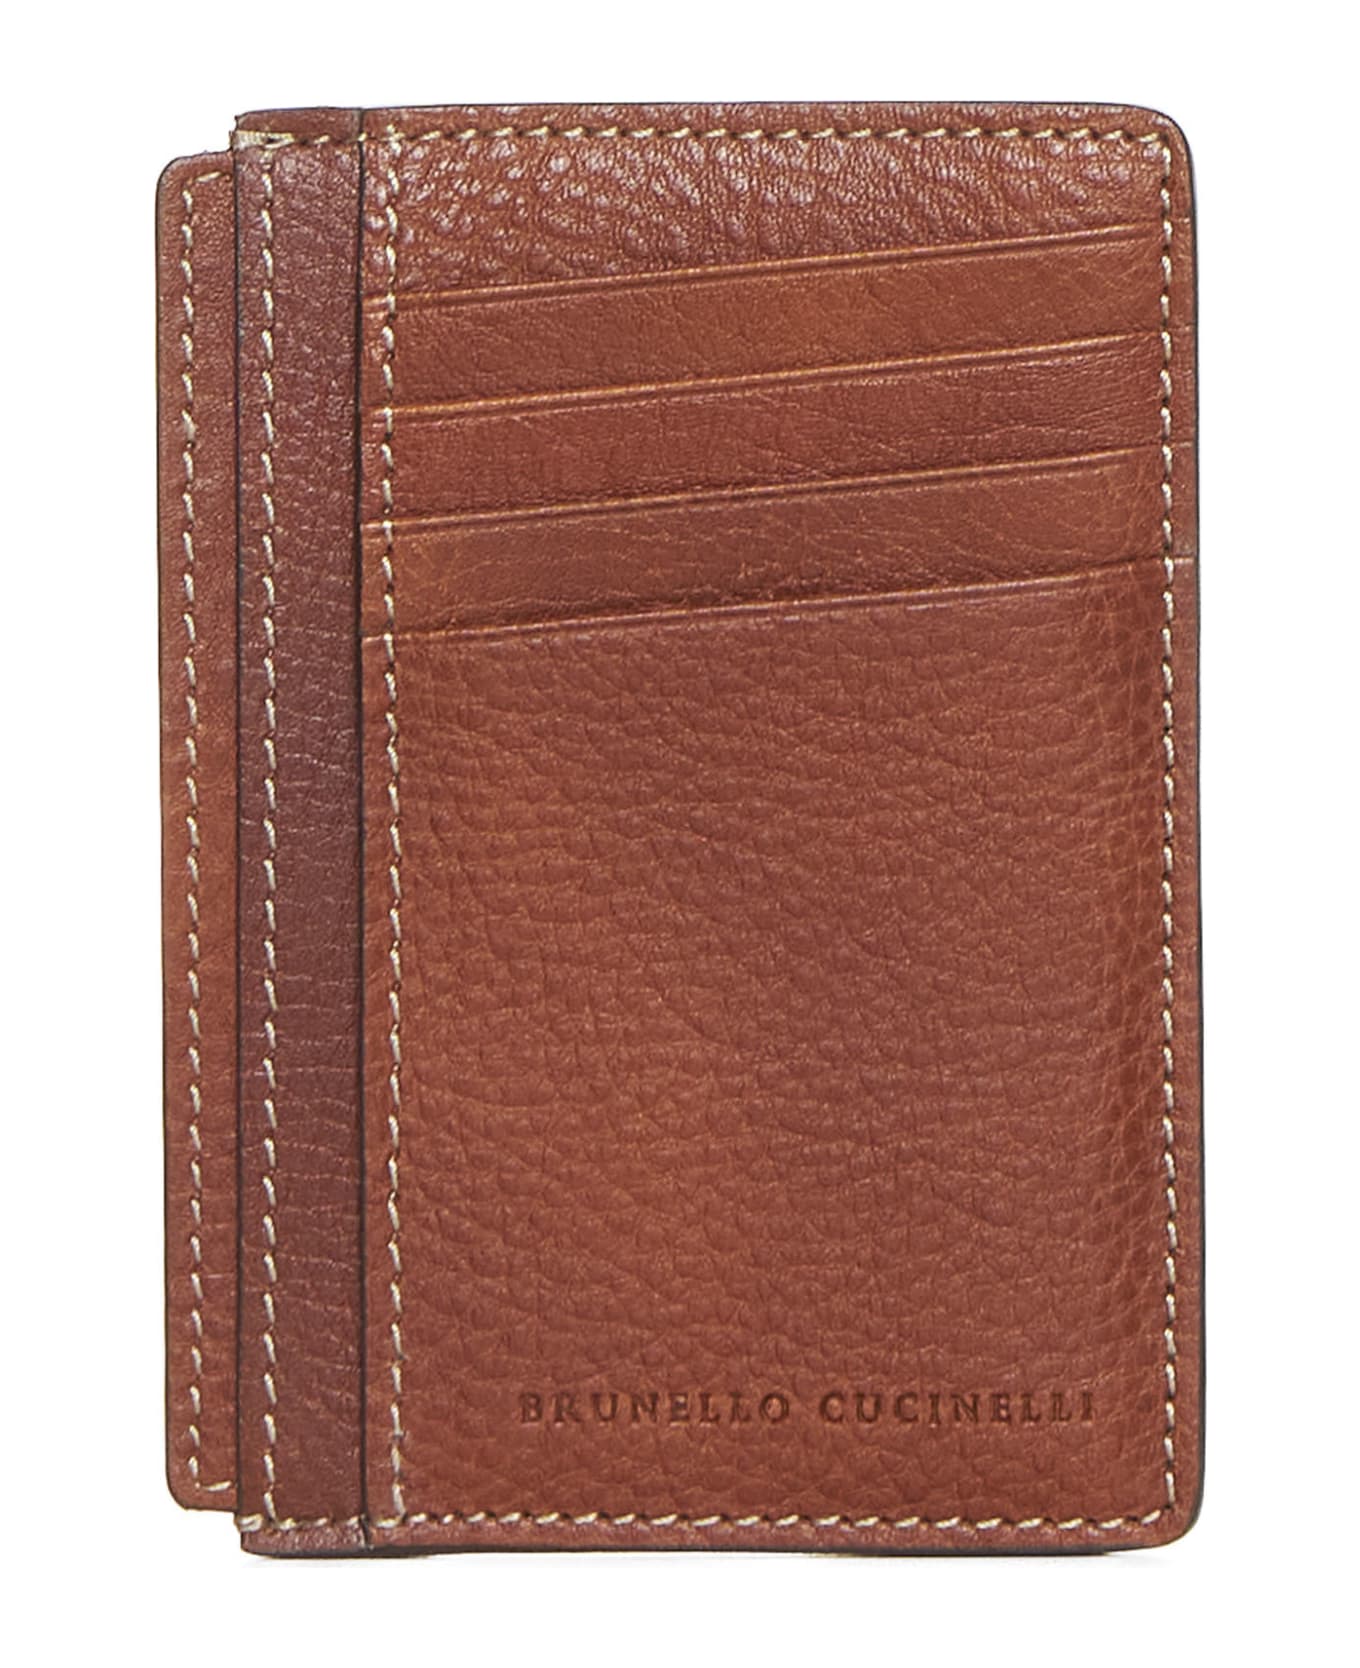 Brunello Cucinelli Wallet - Rame 財布